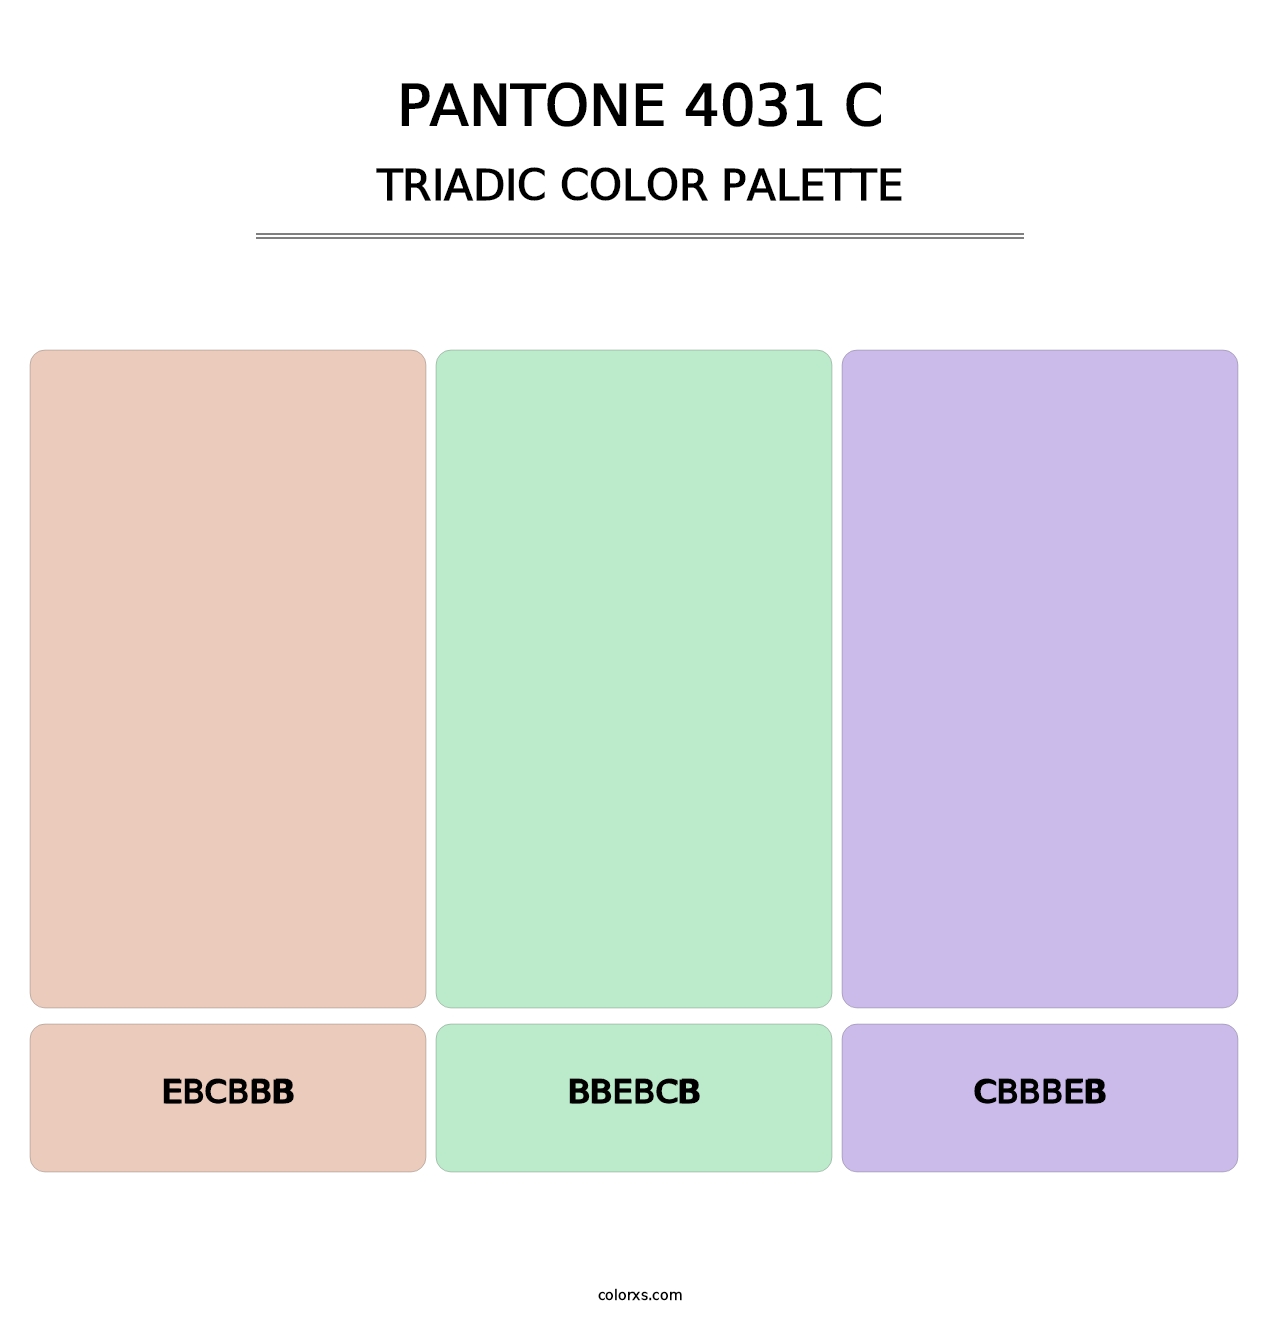 PANTONE 4031 C - Triadic Color Palette